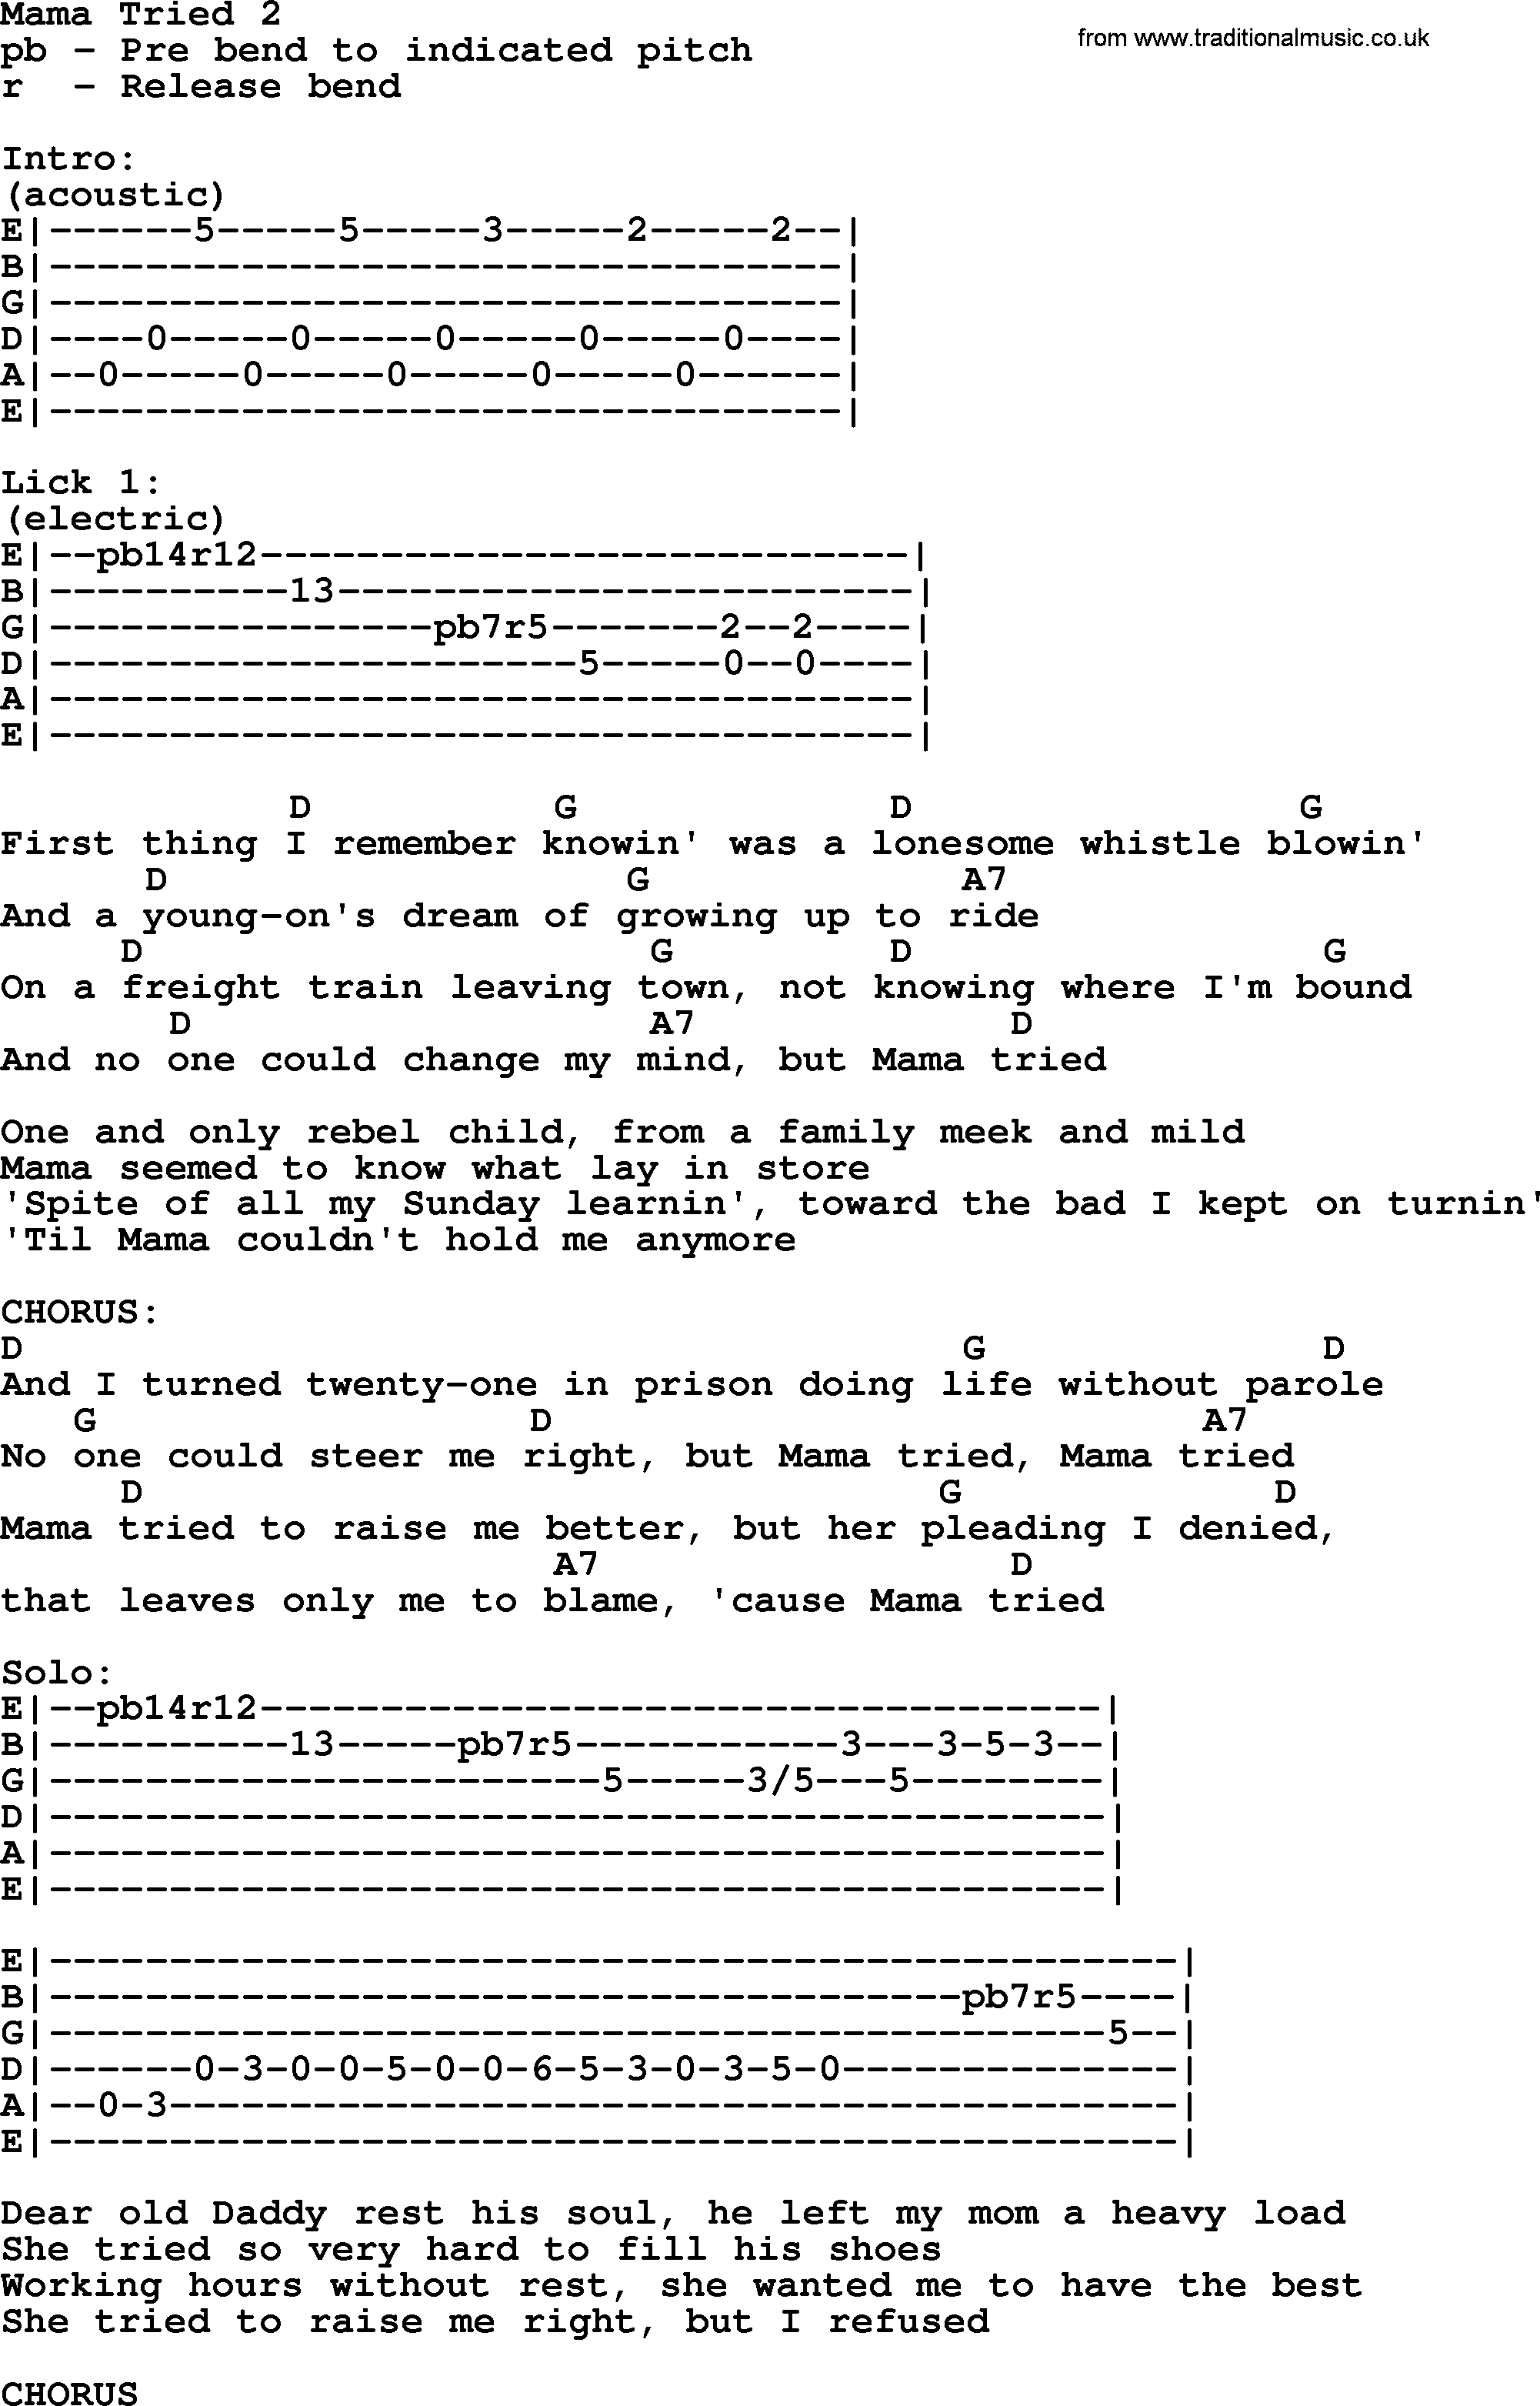 Merle Haggard song: Mama Tried 2, lyrics and chords